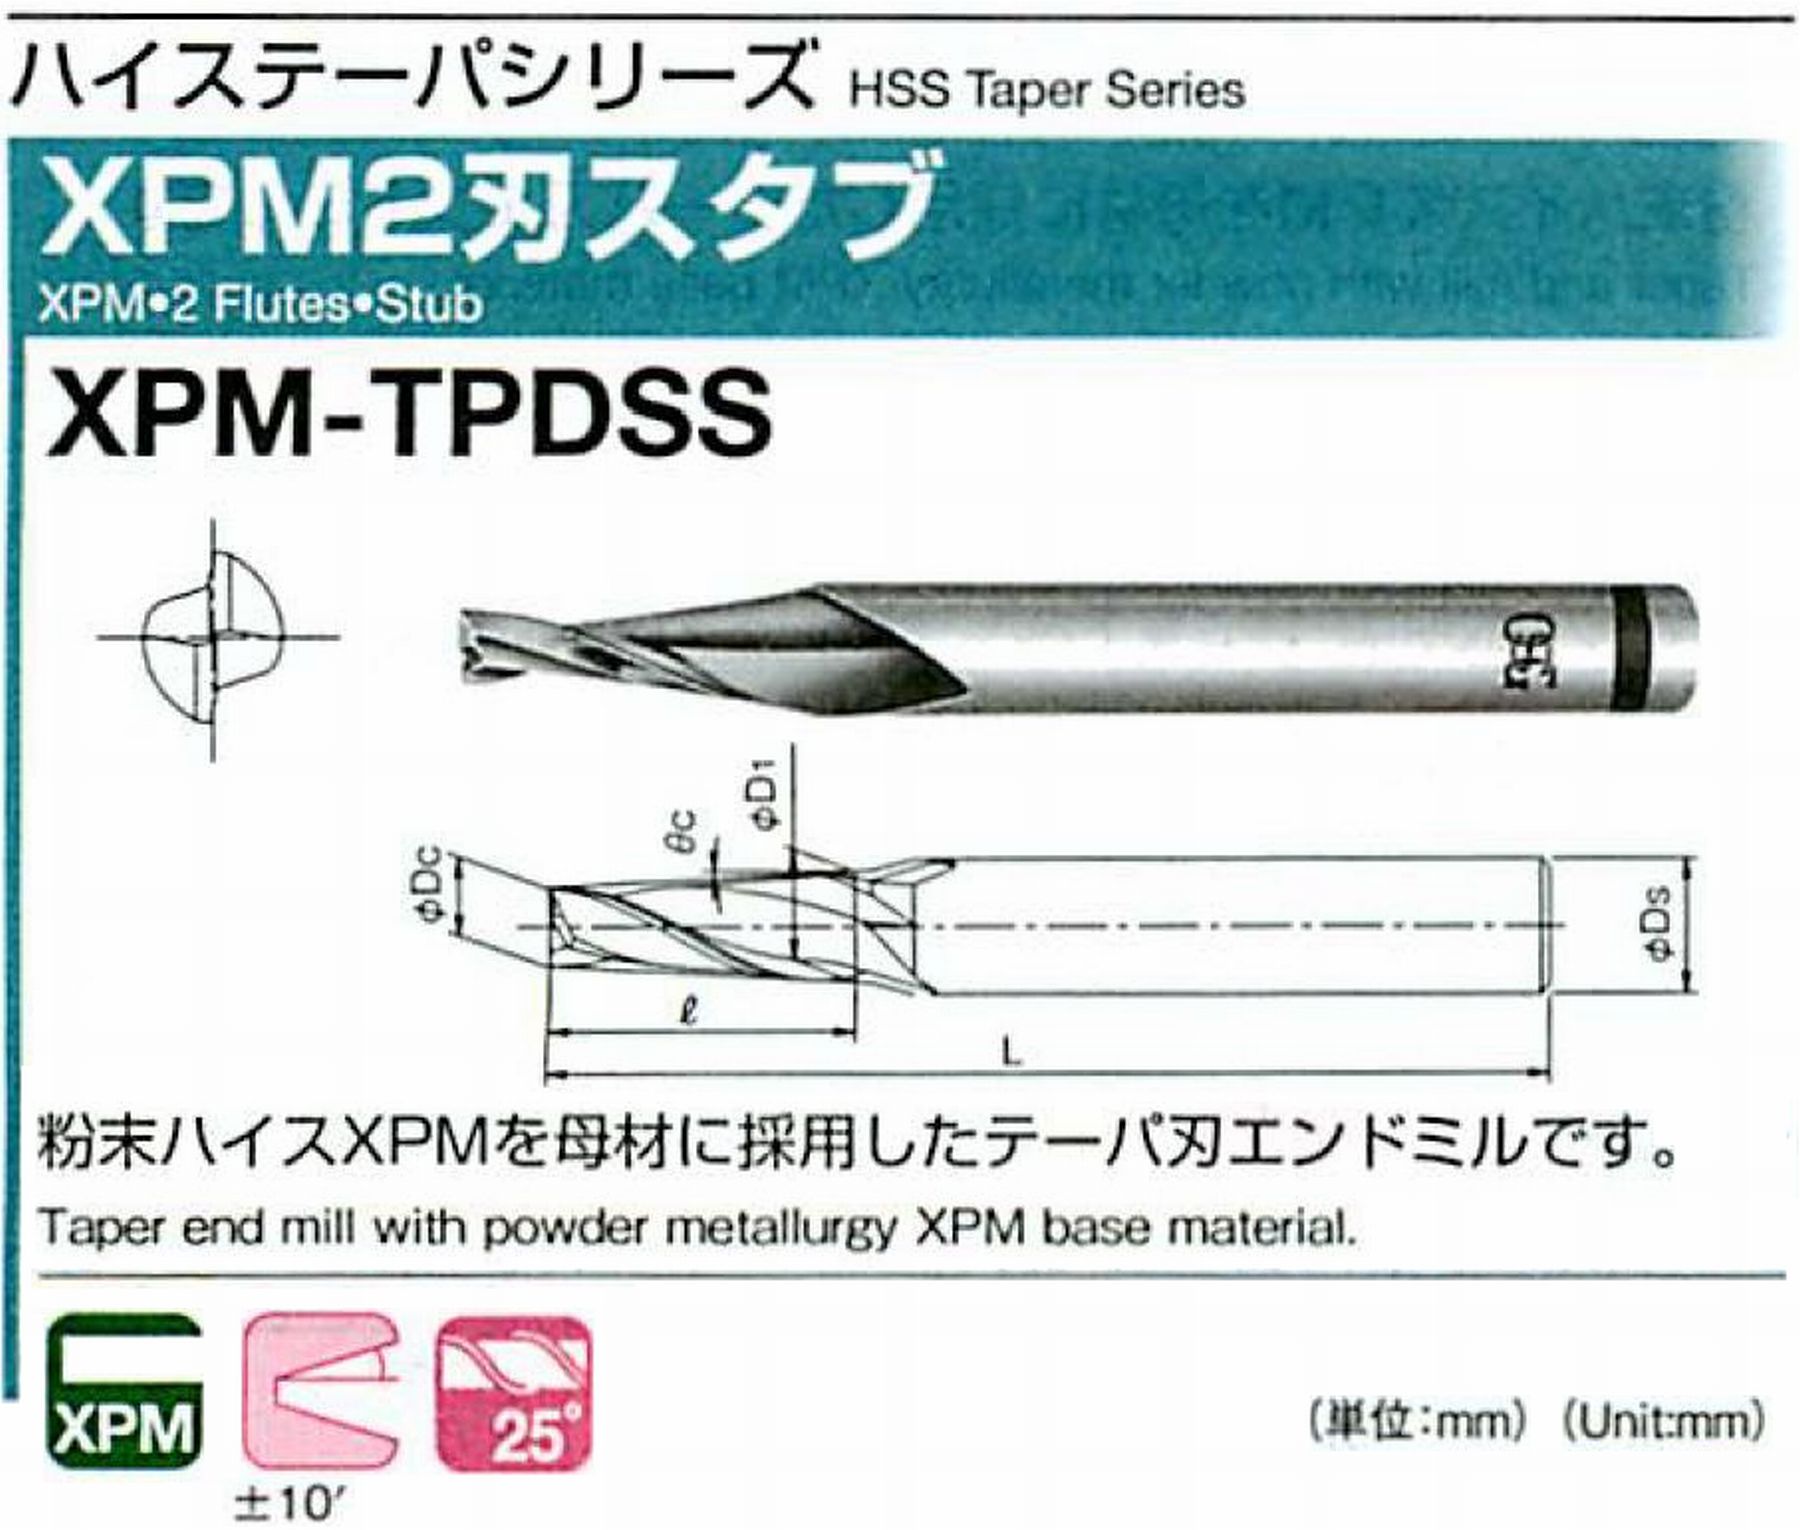 オーエスジー/OSG XPM2刃スタブ XPM-TPDSS 外径×刃部テーパ半角4×1.5° 全長55 刃長11 シャンク径6mm 大端径4.58